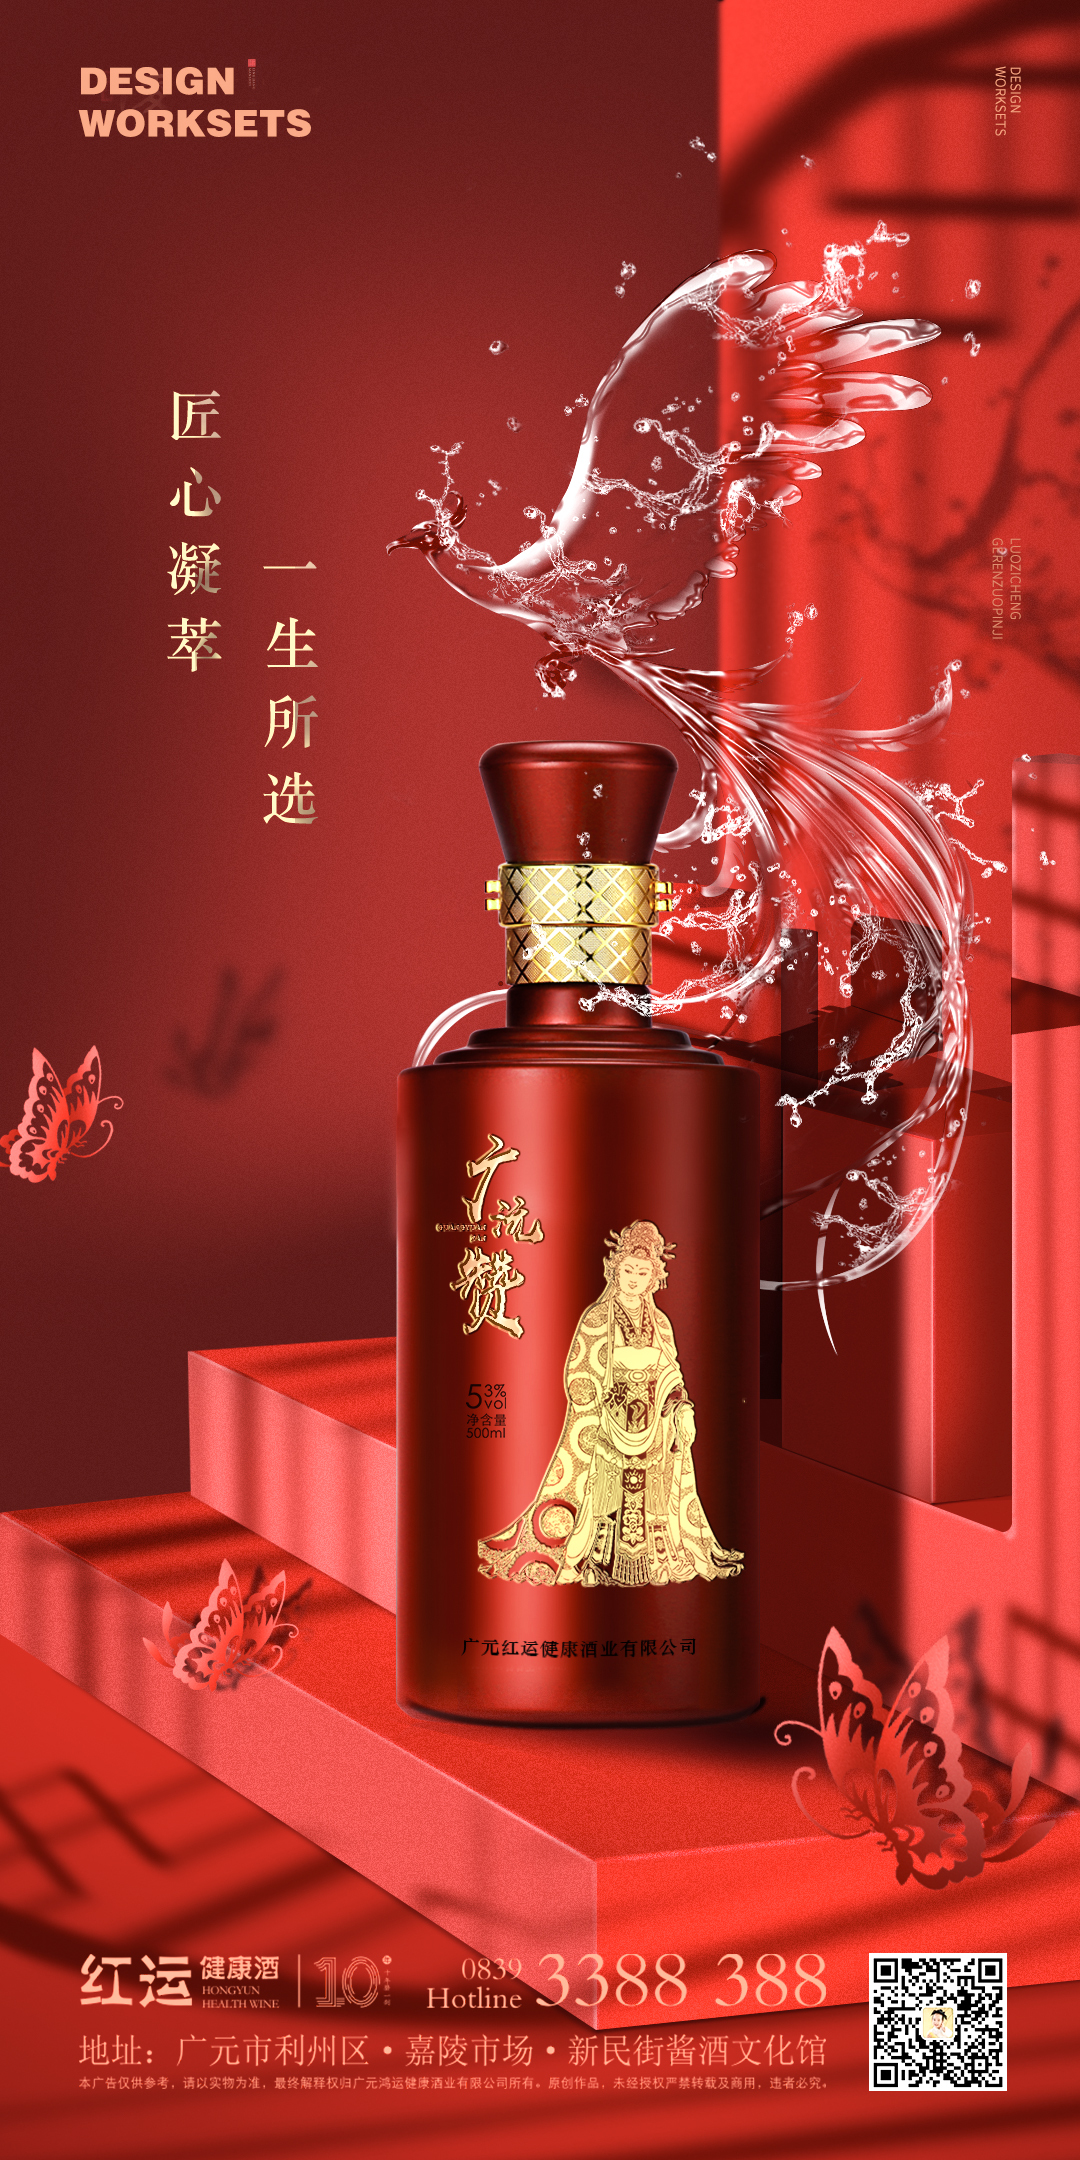 廣元紅運健康酒品牌發布視覺設計圖0